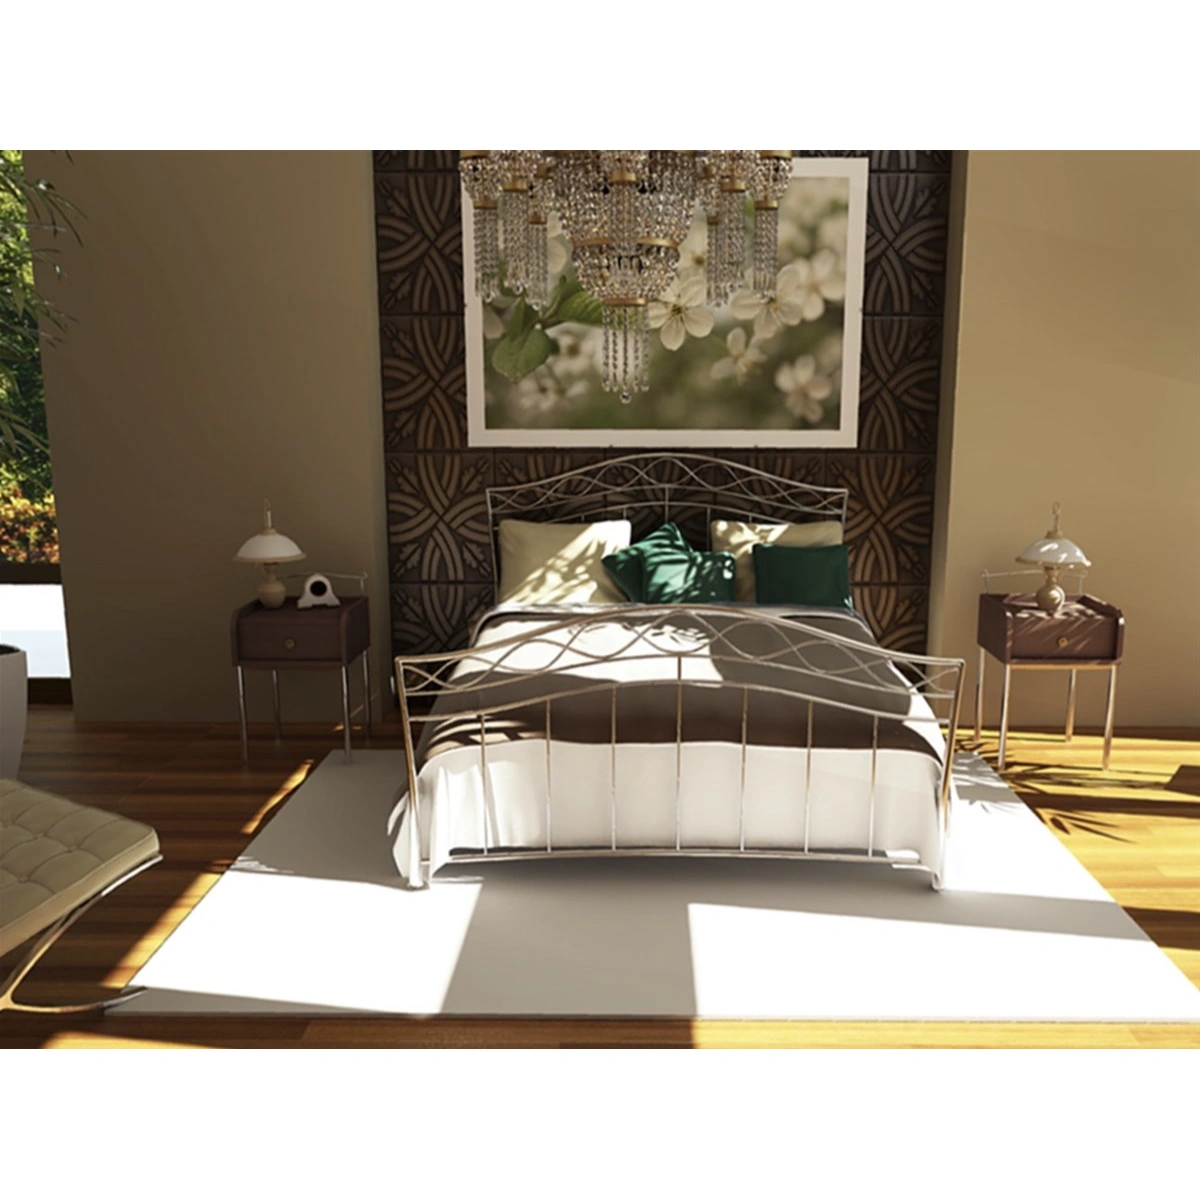 Μεταλλικό Κρεβάτι Dalida Υπέρδιπλο 160x200 - Chic Strom - Ελληνικής Κατασκευής